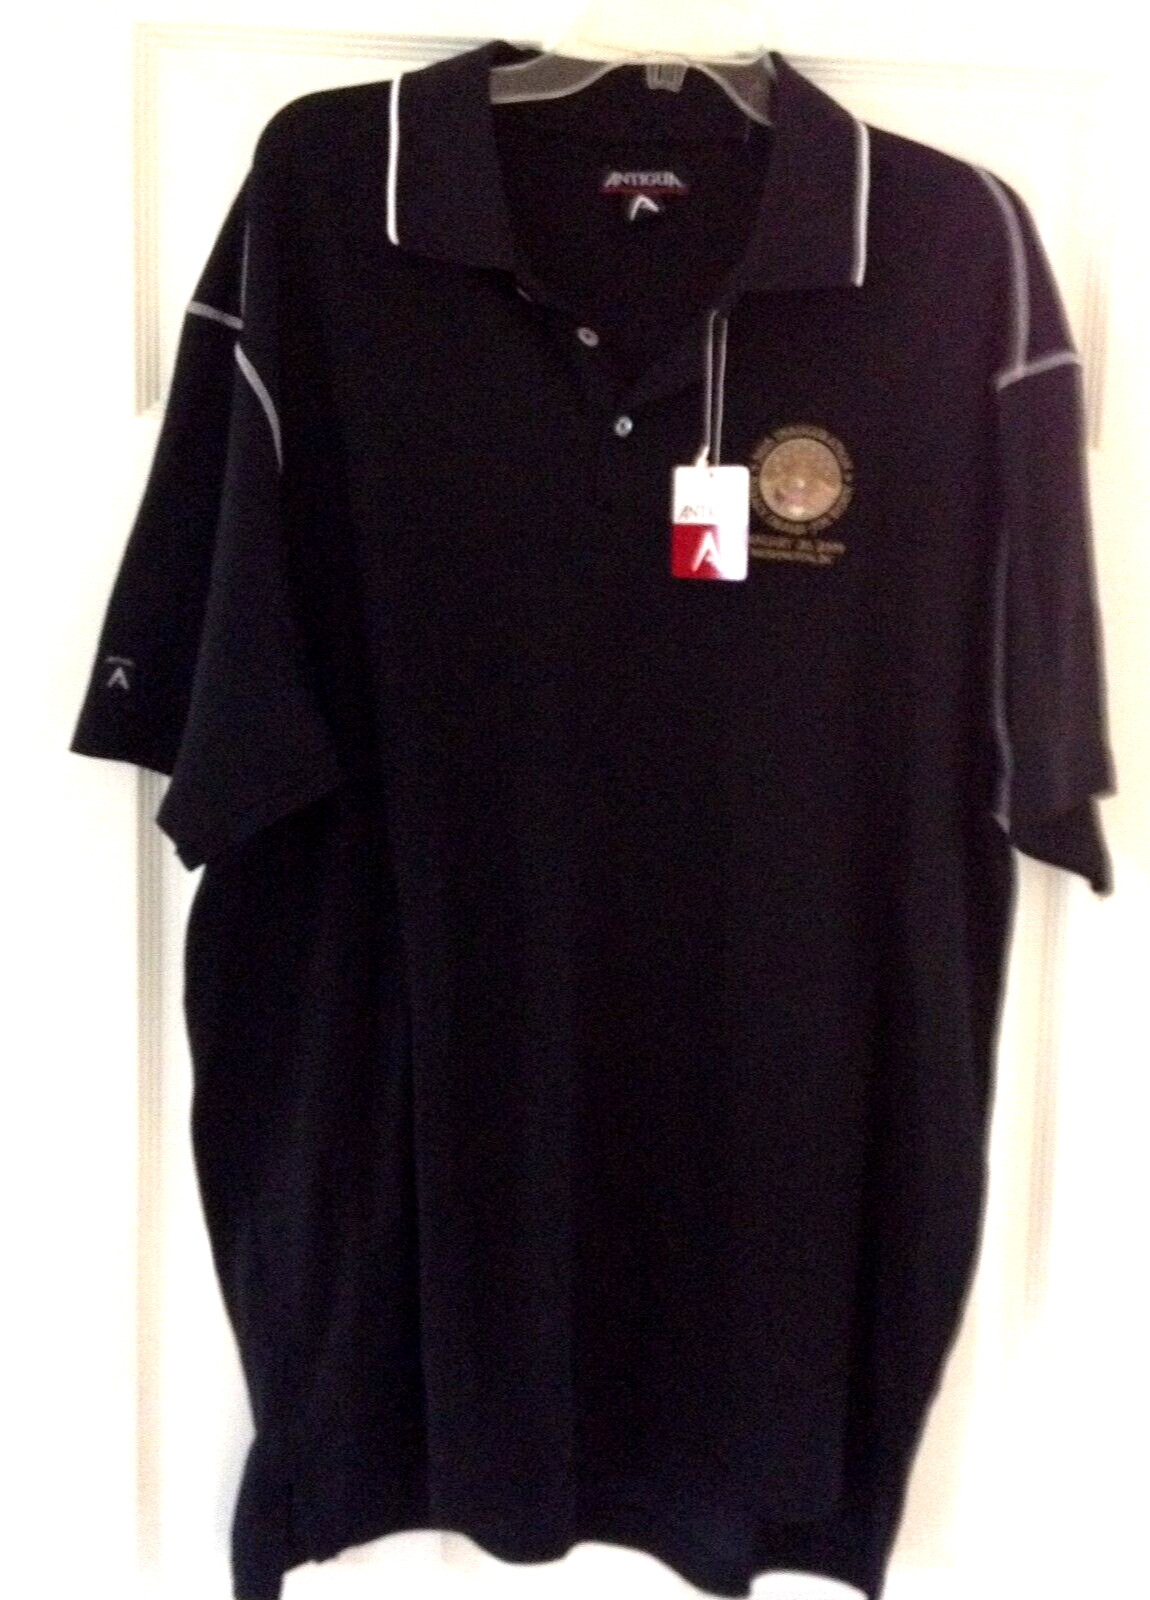 Obama - Biden Golf Shirt - 56th Inauguration - Antigua - XL - NEW W/ TAGS